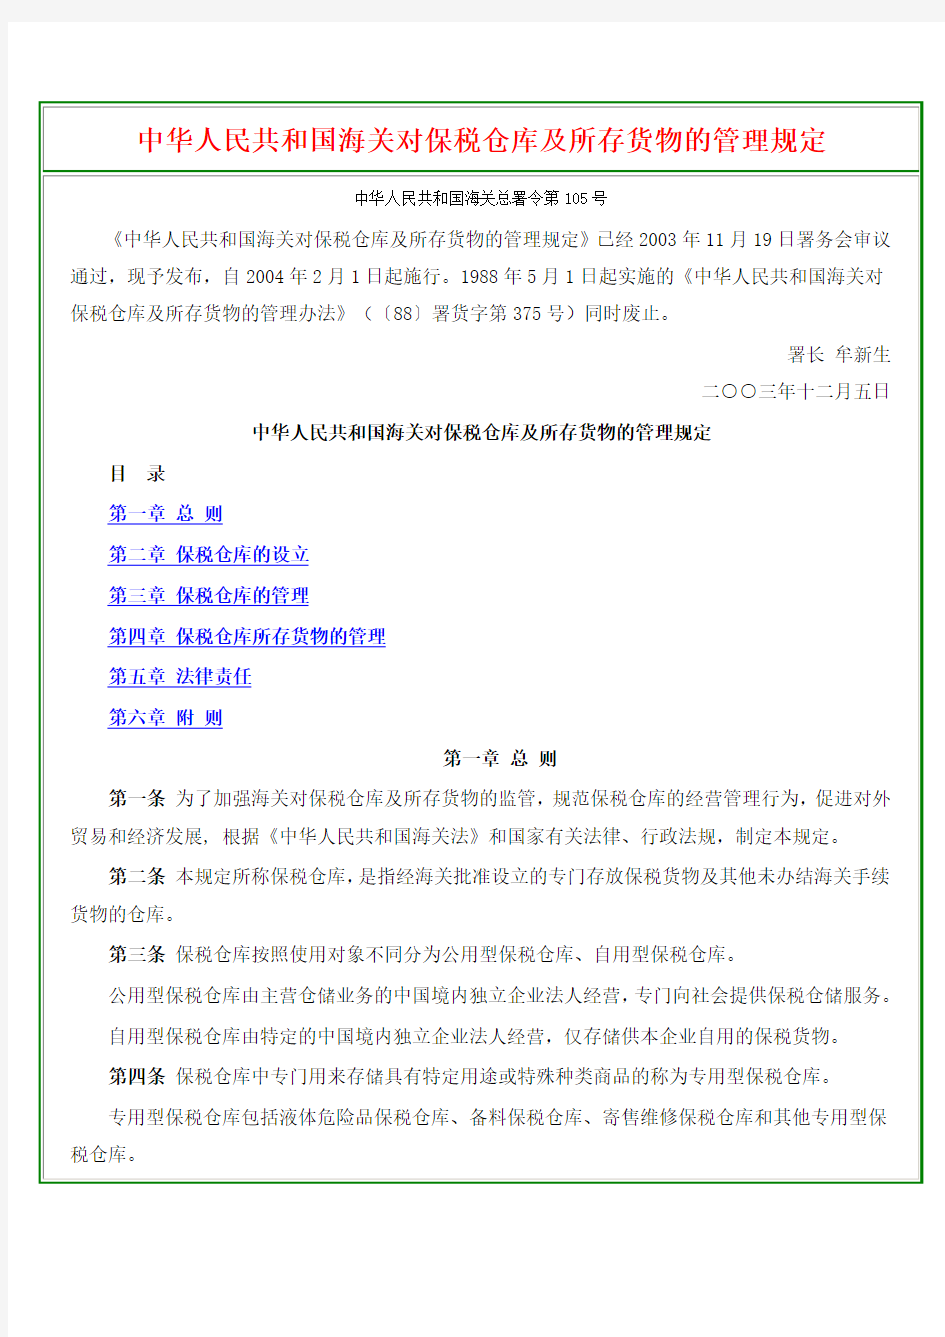 中华人民共和国海关对保税仓库及所存货物的管理规定(105号令)